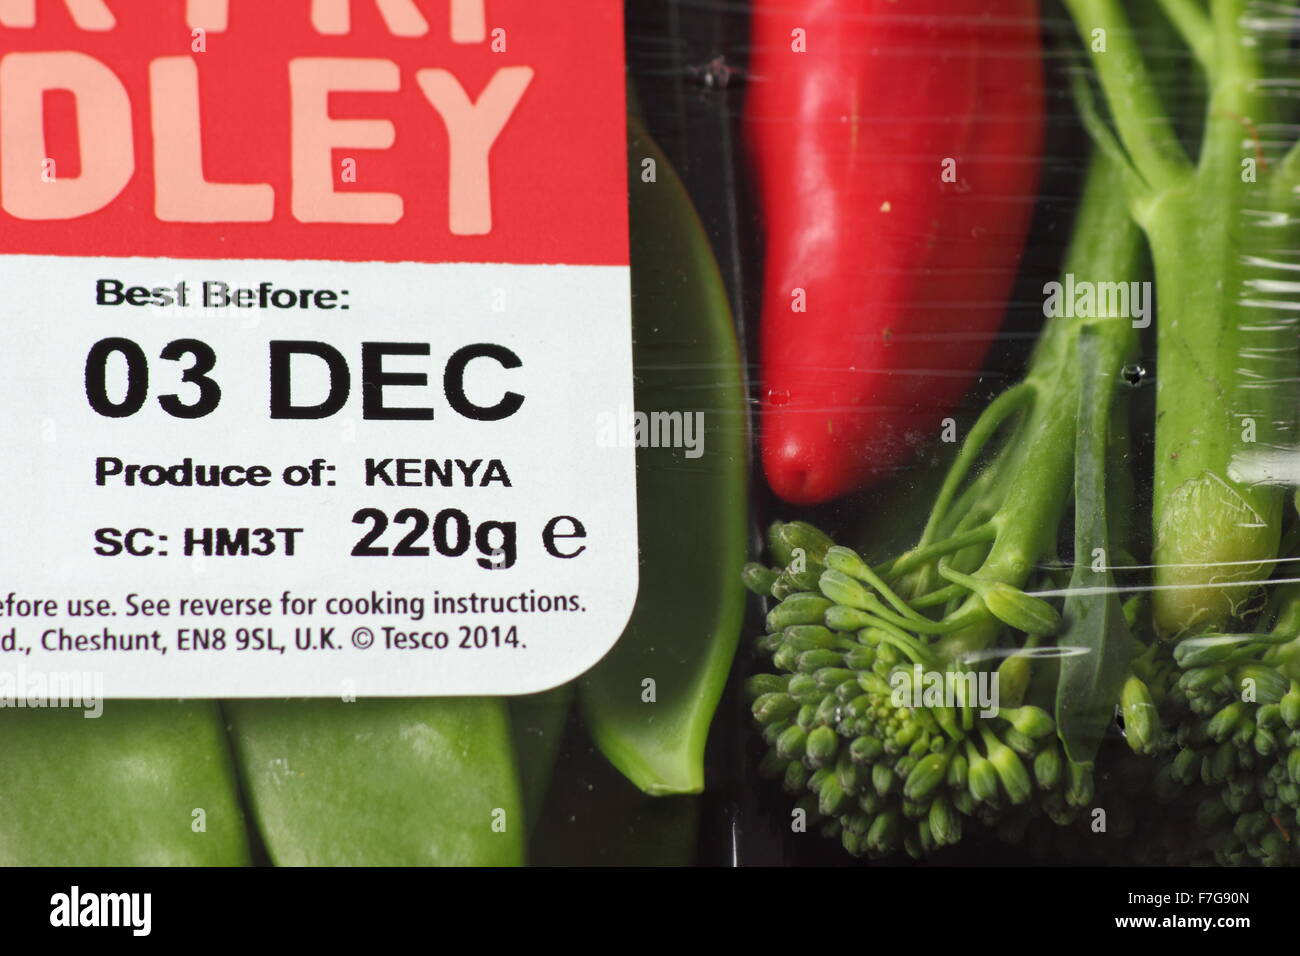 Meilleur avant d'étiquette sur l'emballage d'un medley Sauté de légumes de supermarché Tesco Kenyan, England UK - editorial Utilisez uniquement Banque D'Images